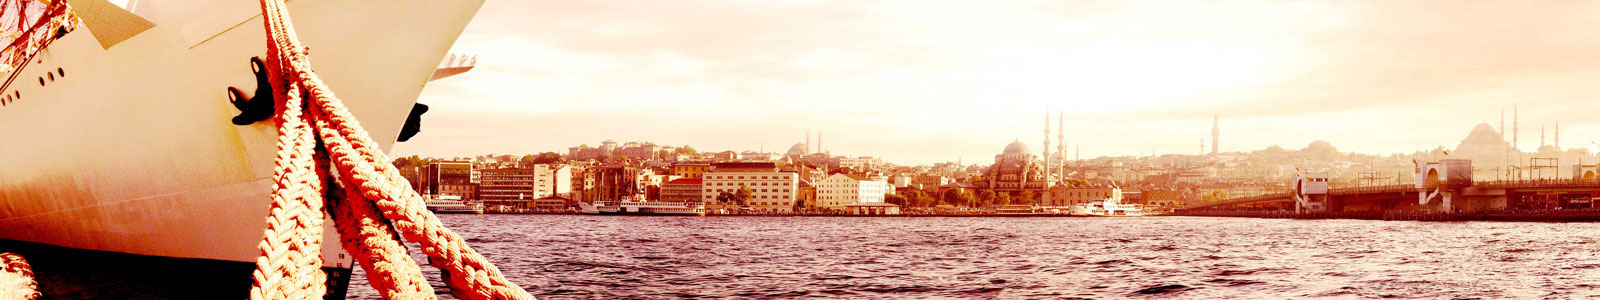 №6188 - Панорамный вид Стамбула с кораблем у причала